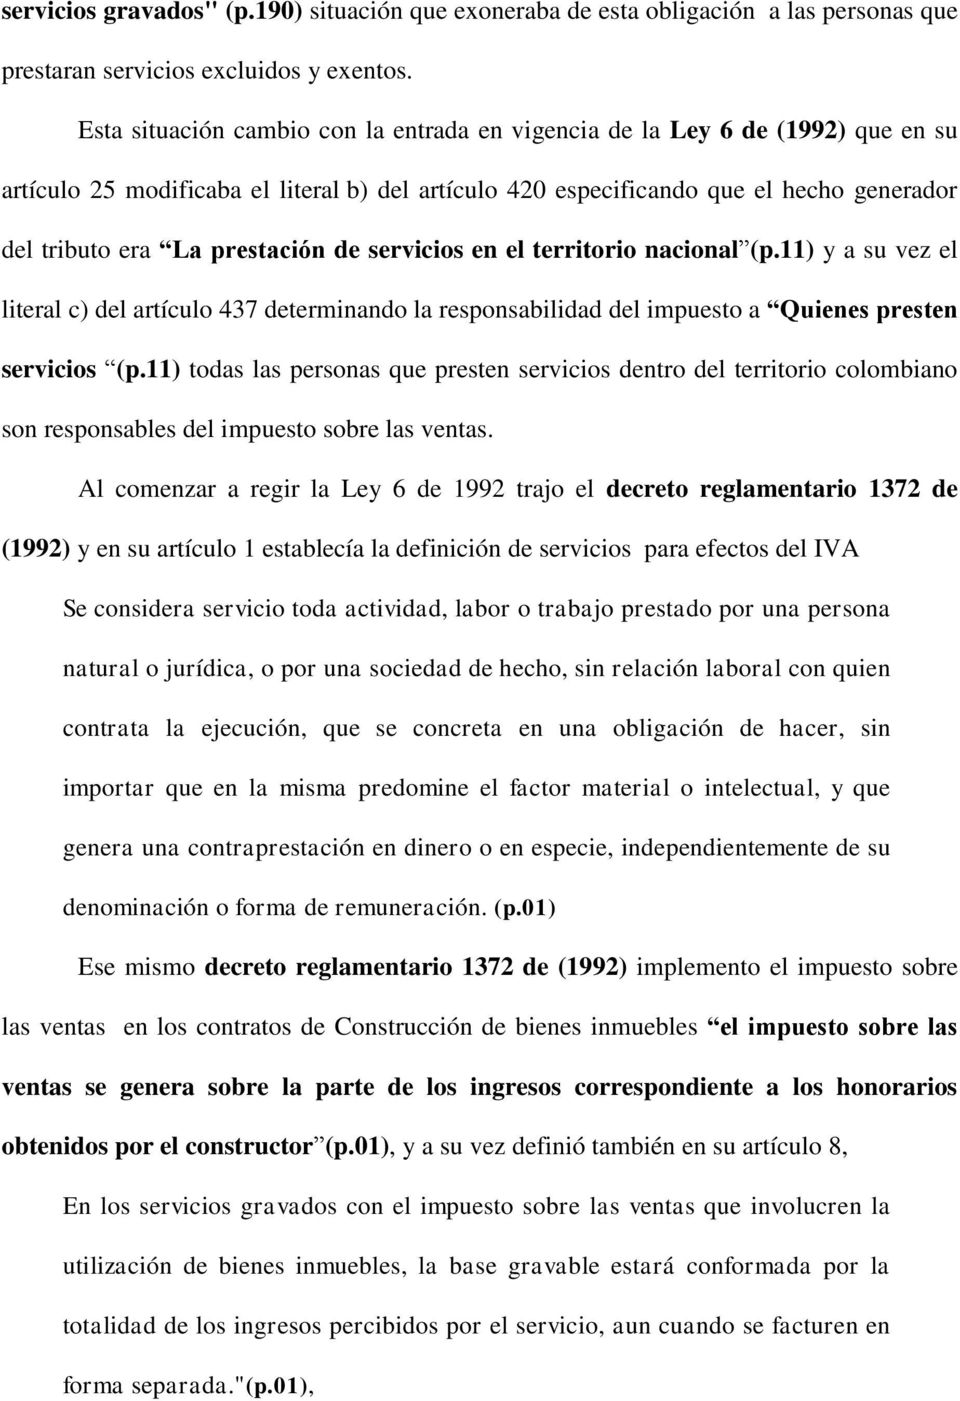 prestación de servicios en el territorio nacional (p.11) y a su vez el literal c) del artículo 437 determinando la responsabilidad del impuesto a Quienes presten servicios (p.